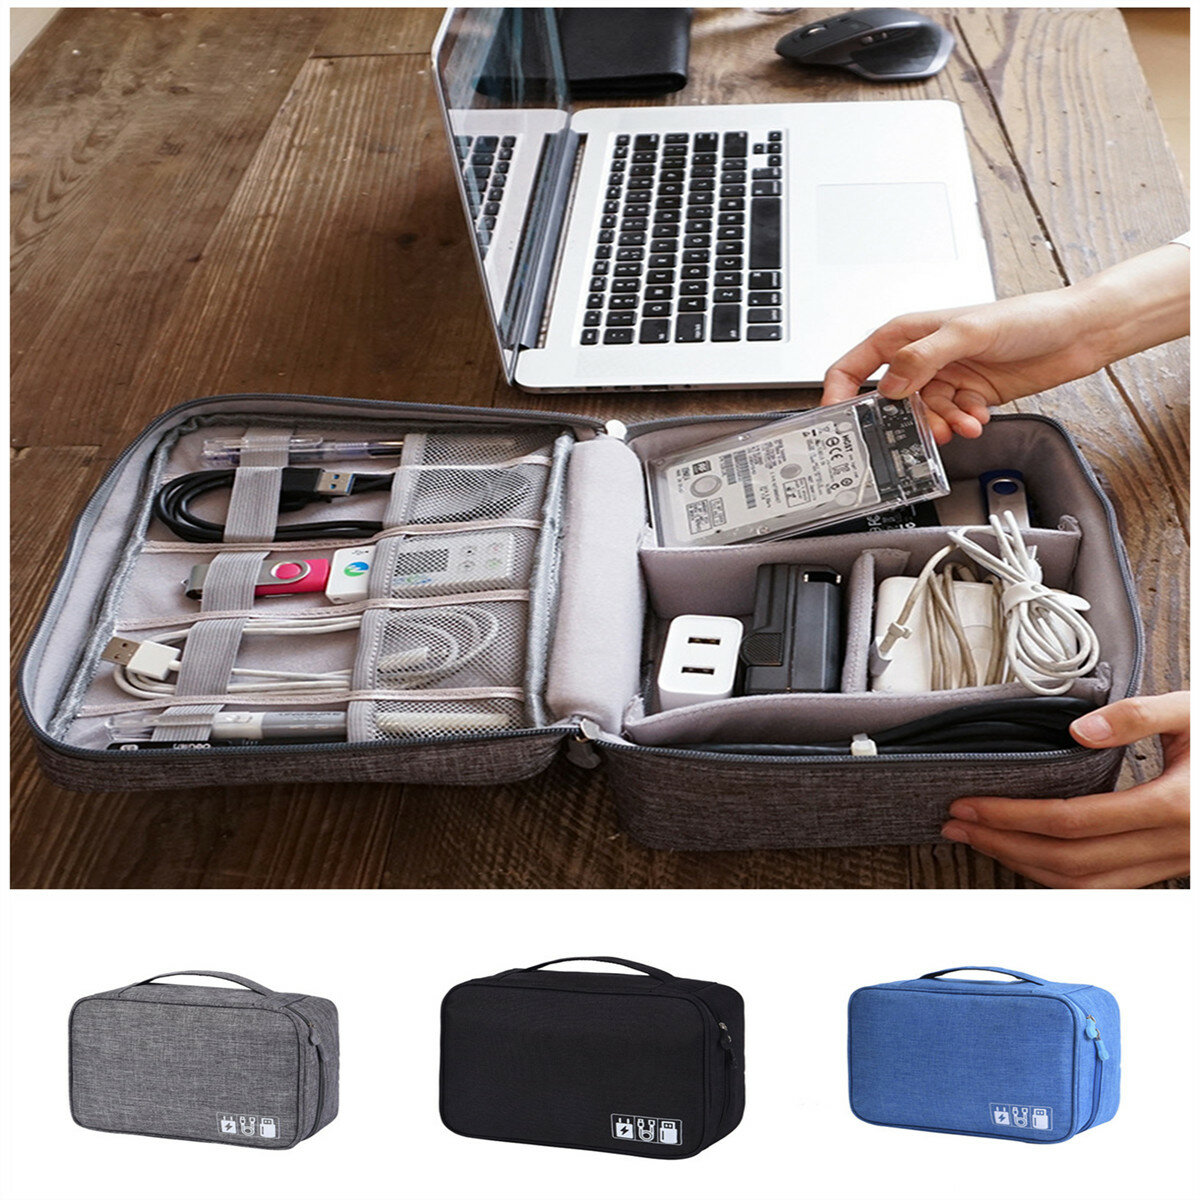 Xmund XD-DY28 متعددة الوظائف رقمي حقيبة تخزين حقيبة كابل USB كابل شاحن سماعة المنظم في السفر